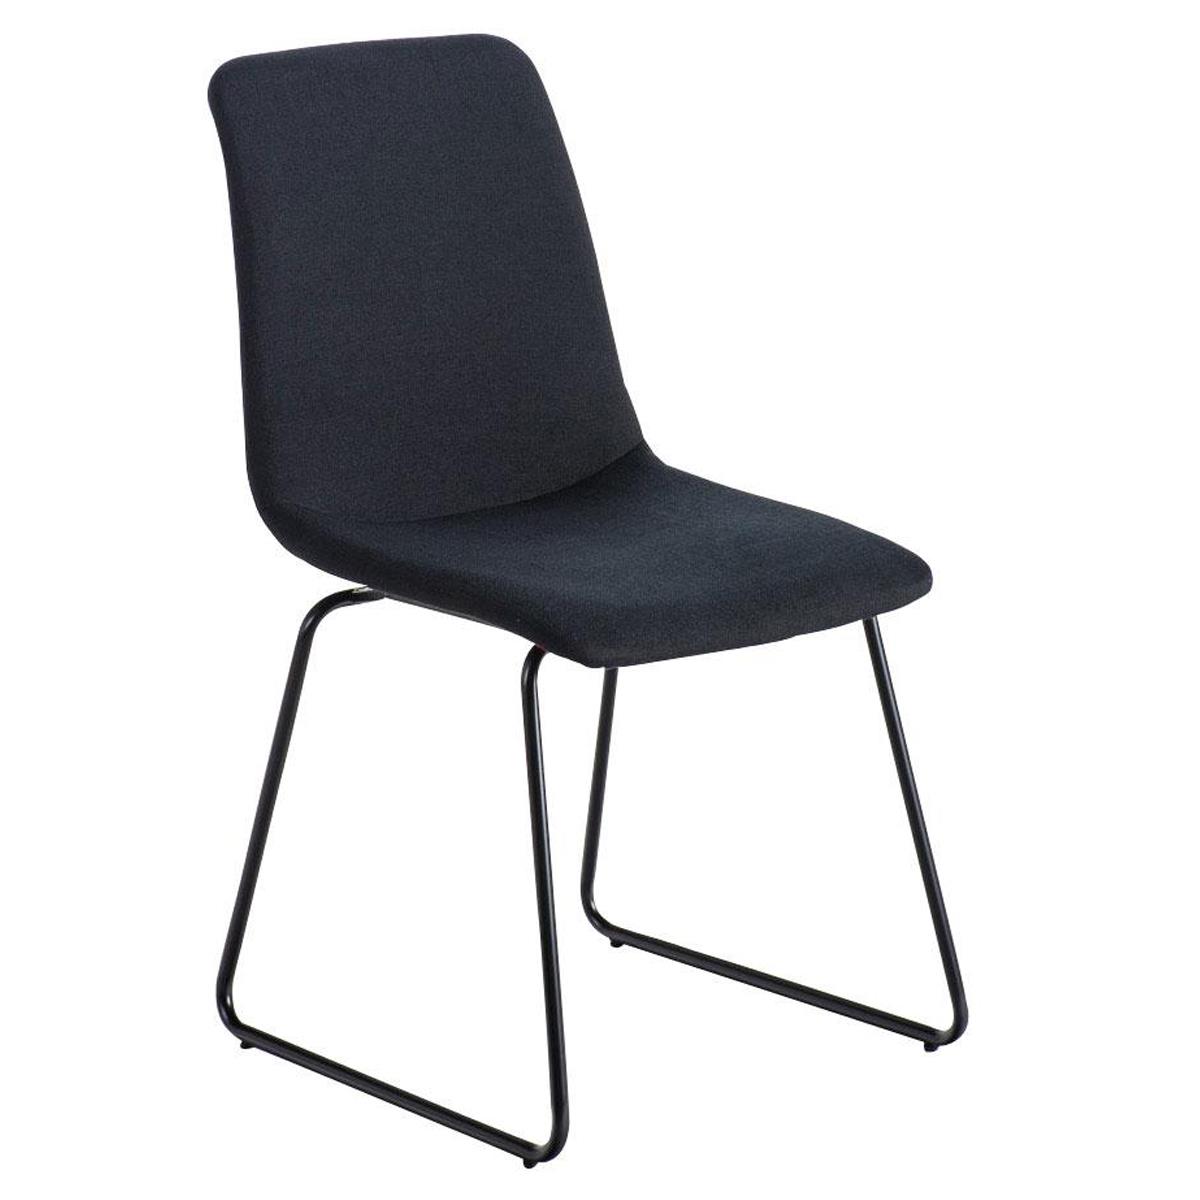 Chaise visiteur FRANCESC, Design Exclusif, Revêtement en Tissu, Noir